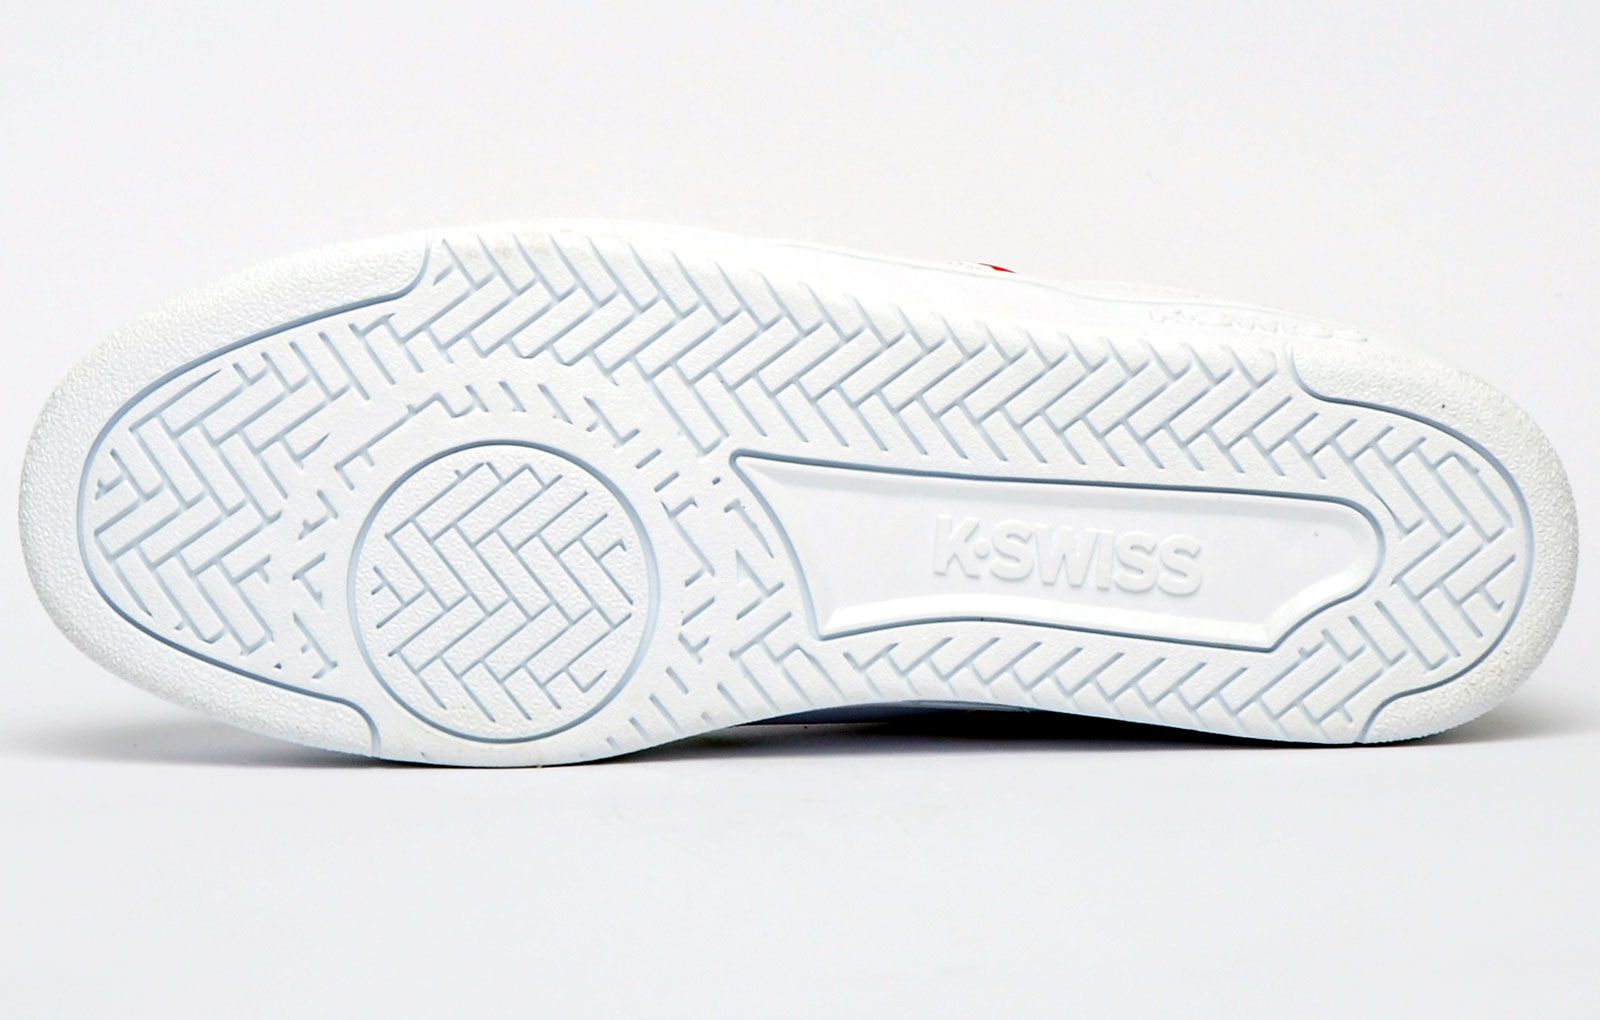 De K Swiss Court Winston is een klassieke lage sneaker gemaakt van een bovenwerk van wit leer met het iconische ontwerp met 5 strepen van het merk dat de zijkanten siert met een geborduurd K Swiss-schildlogo op de tong, voor een ongerepte designerloo